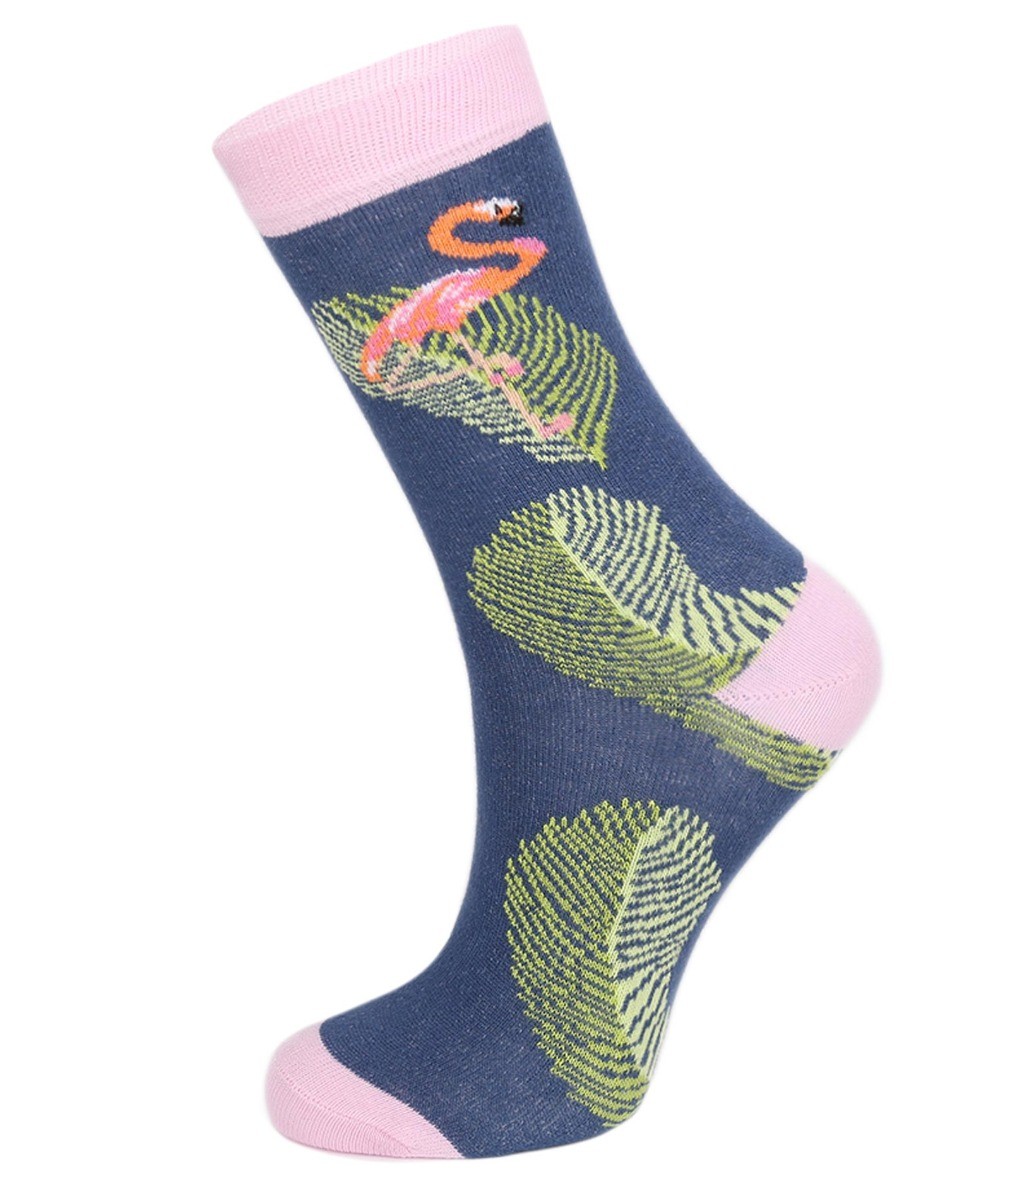 Unisex Kids Flamingo Socks- Novelty